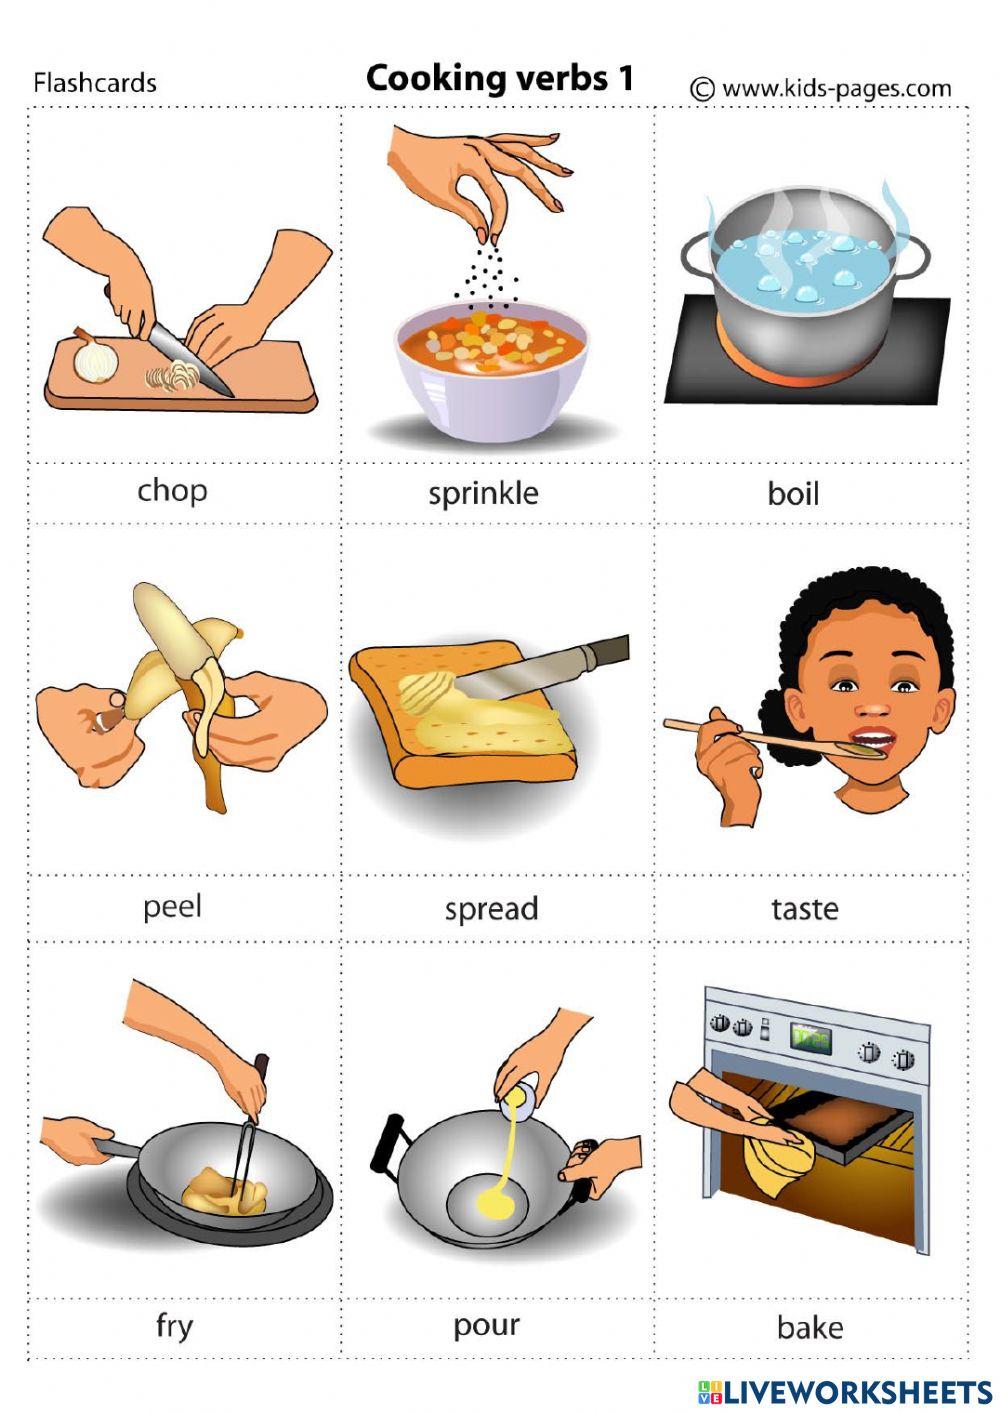 Cooking in english. Cooking verbs английский. Глаголы готовки на английском. Приготовление еды на английском языке. Глаголы приготовления пищи на английском.